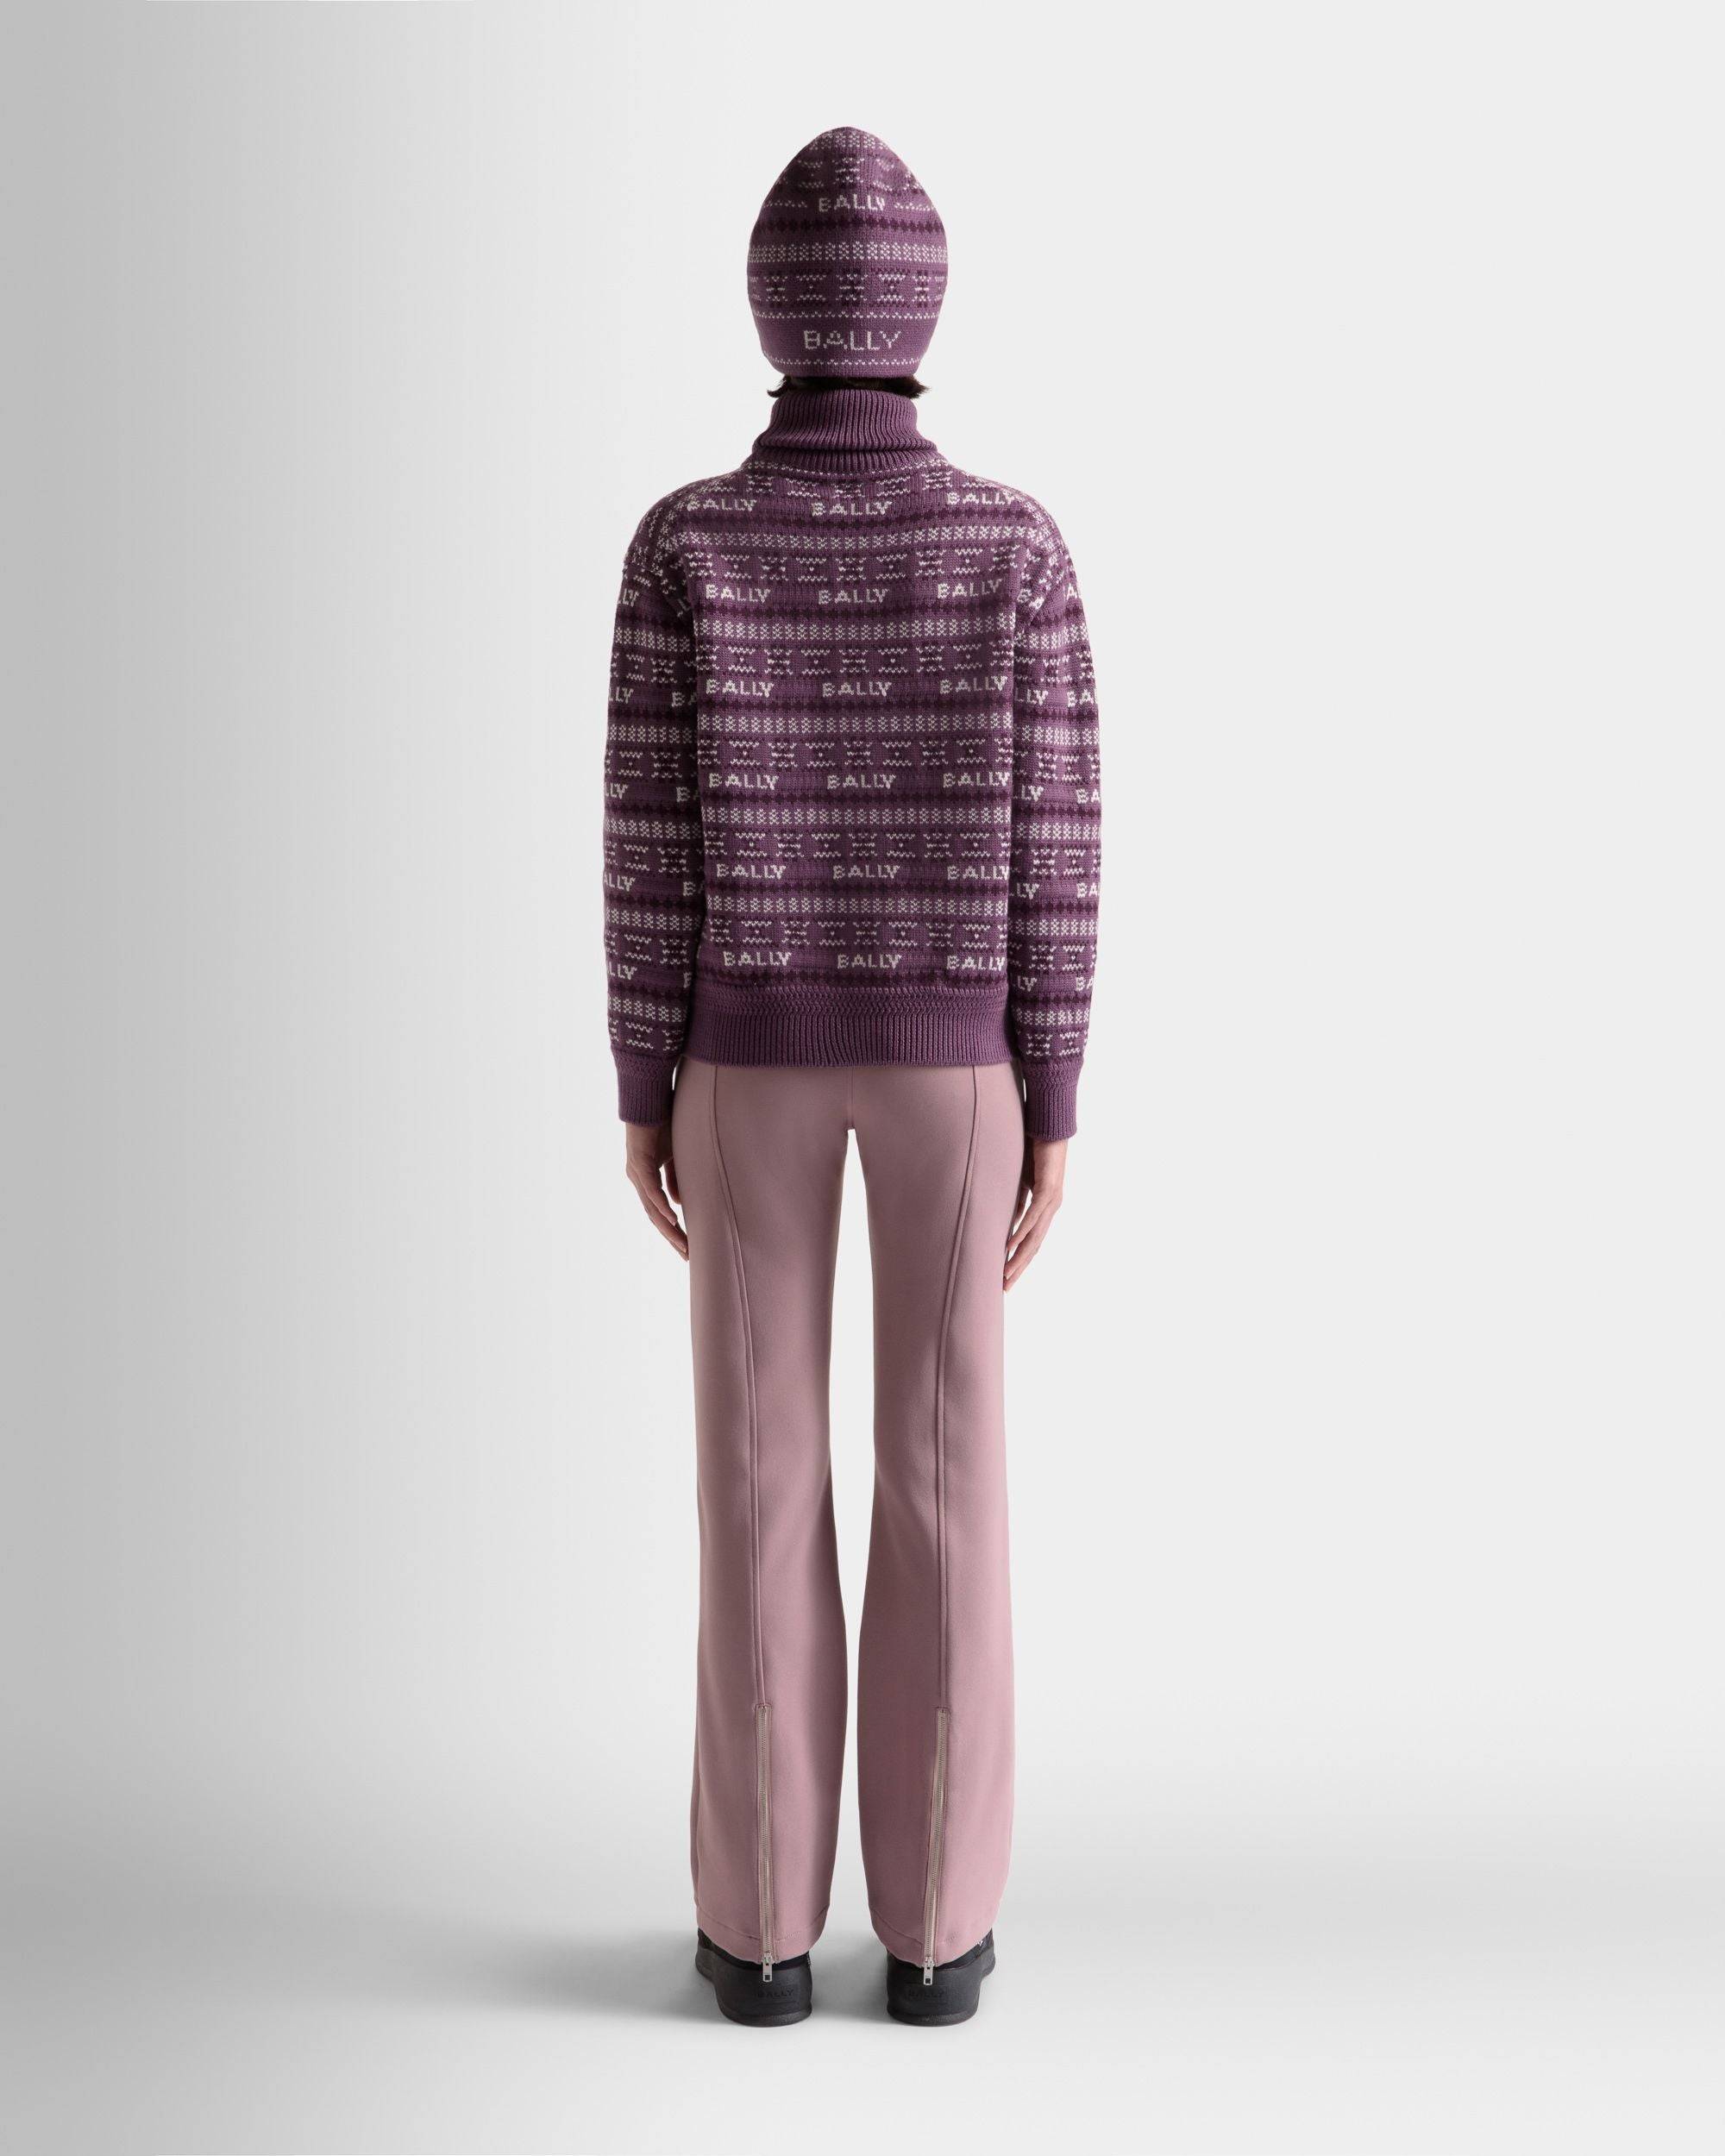 Damen-Rollkragenpullover aus lila Wolle | Bally | Model getragen Rückseite